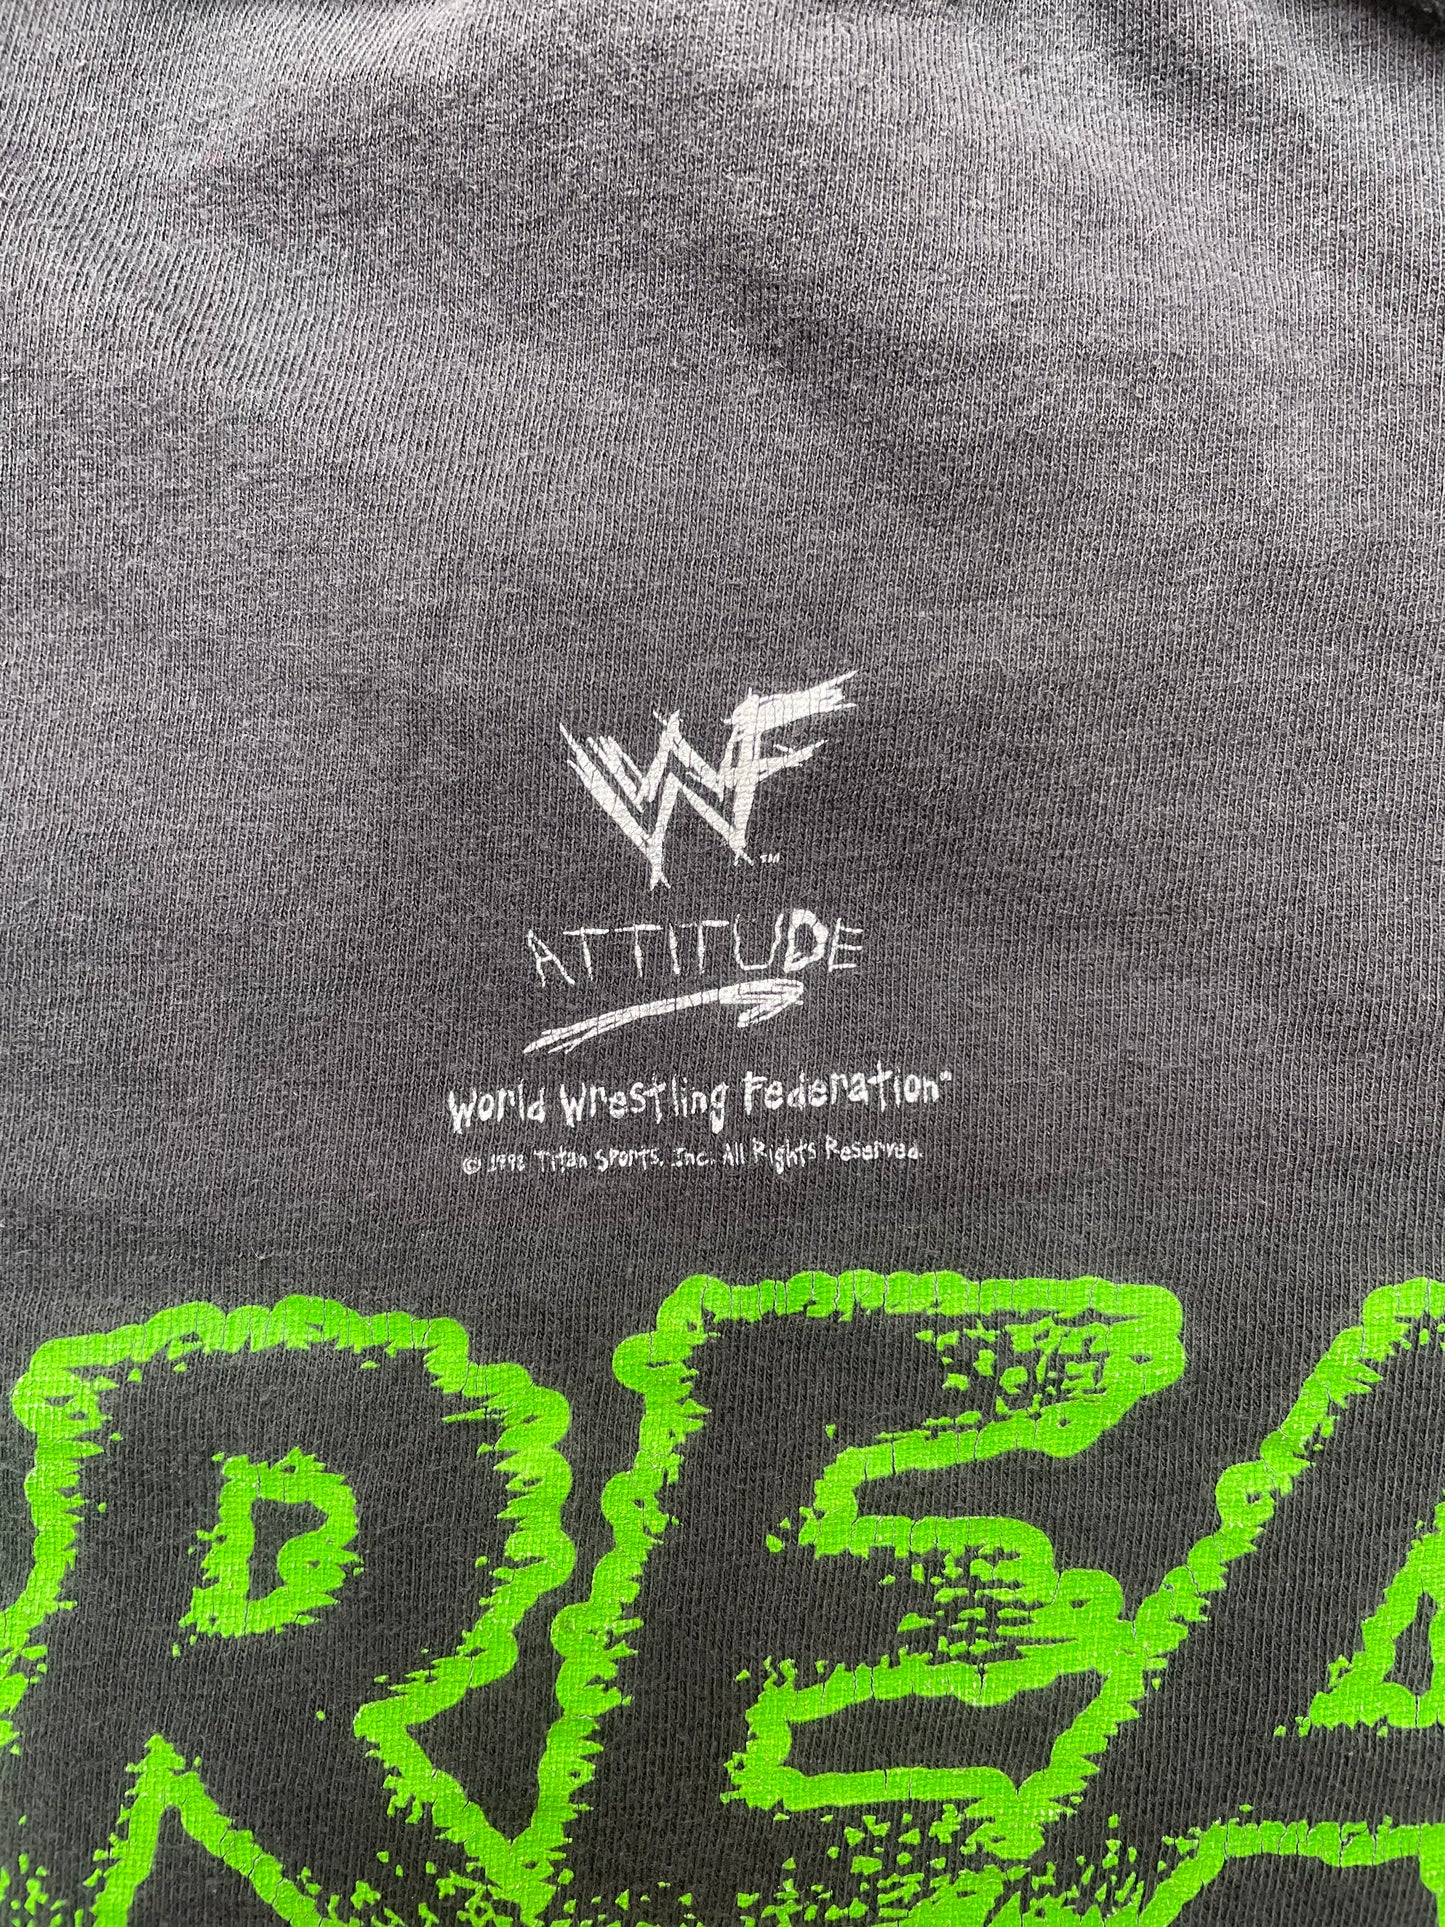 1998 WWF D-Generation X 'Break it Down' Wrestling T-Shirt - XL